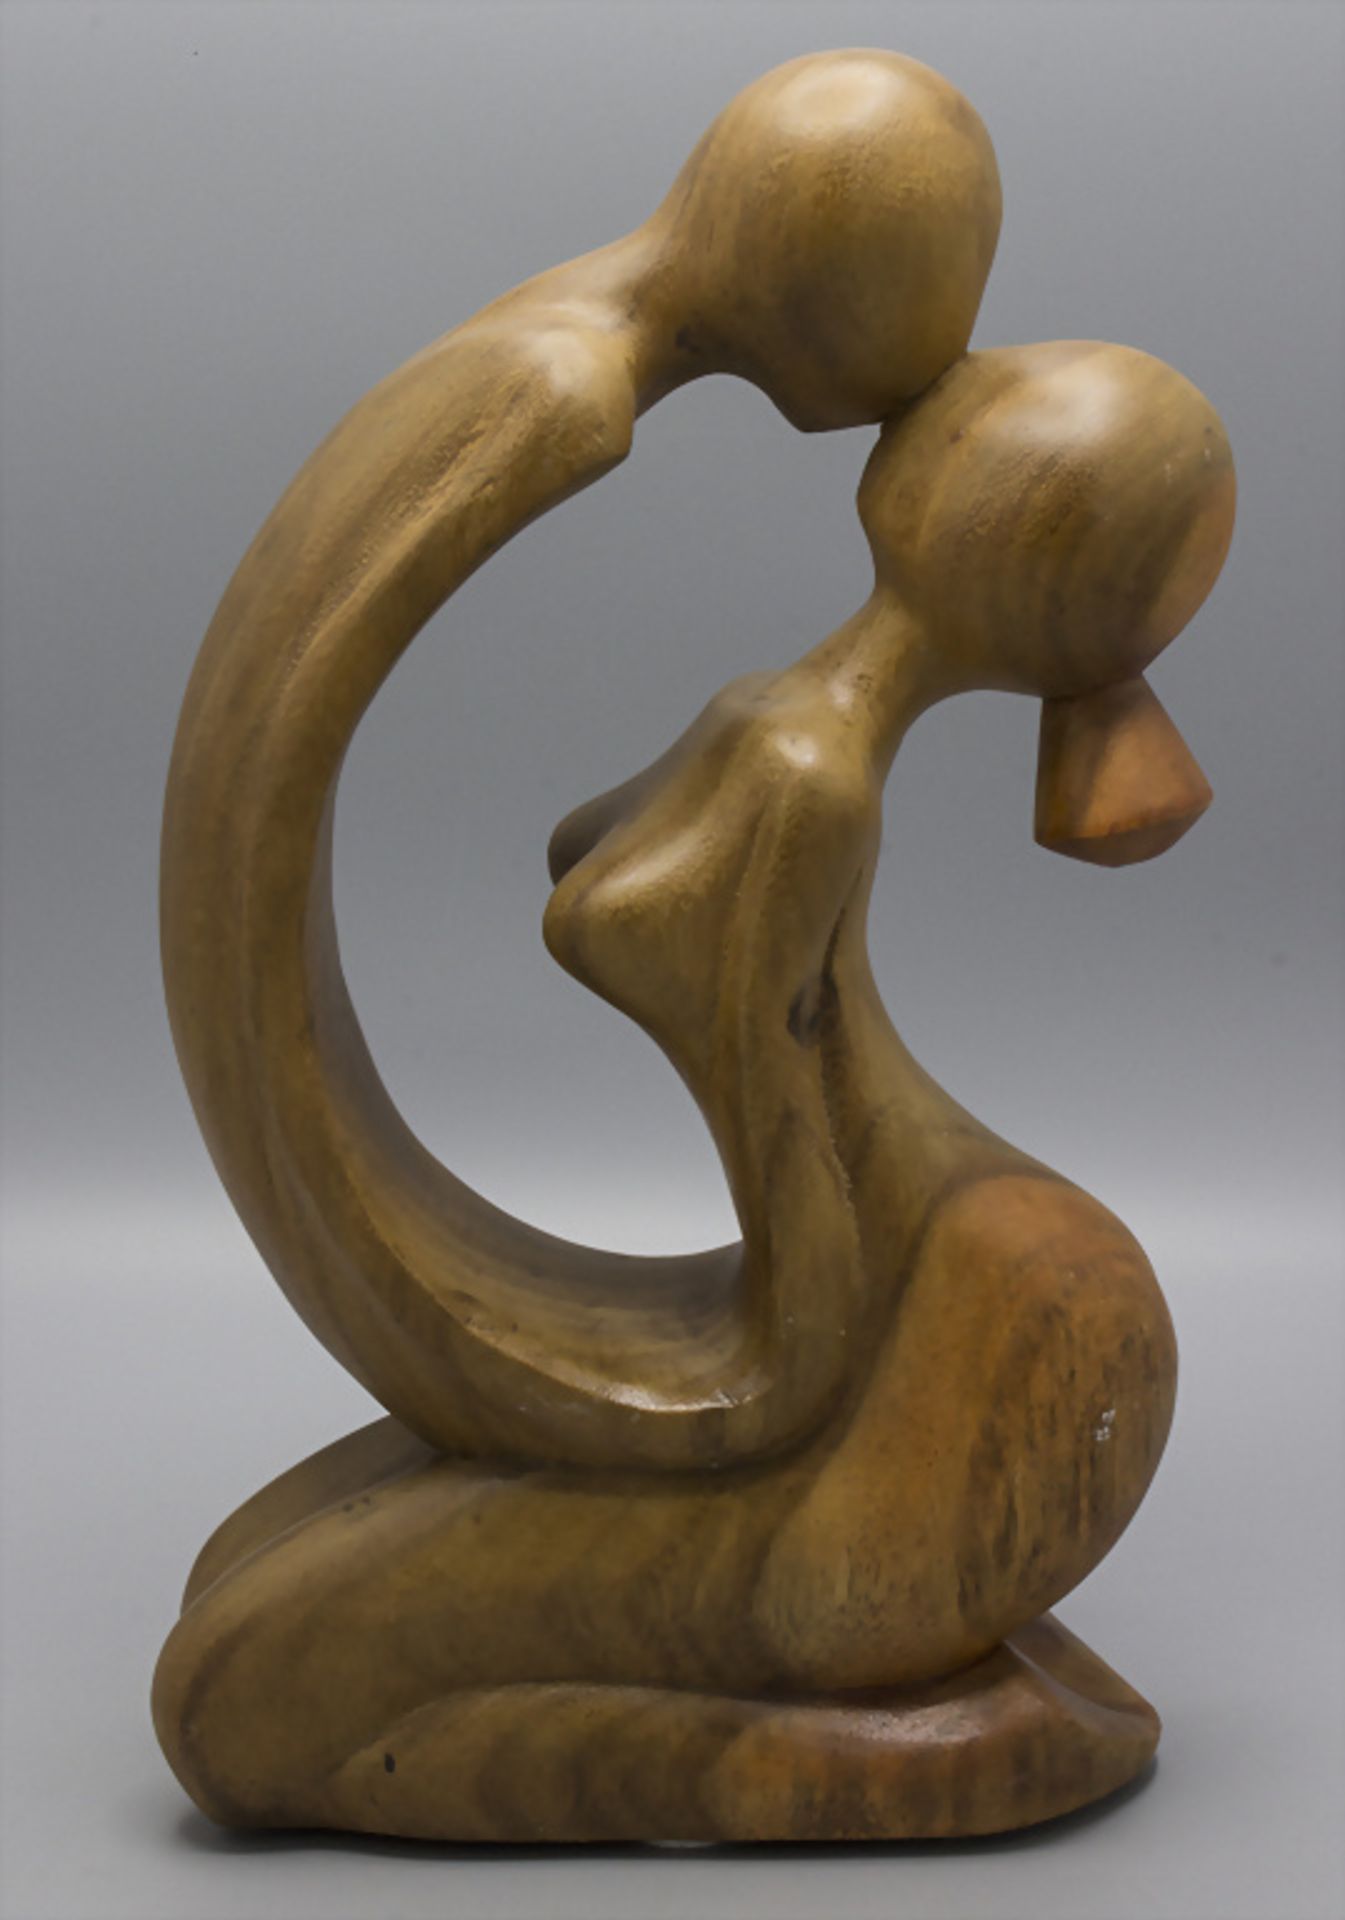 Abstrakte Holz-Skulptur 'Liebespaar' / An abstract wooden sculpture 'lovers'